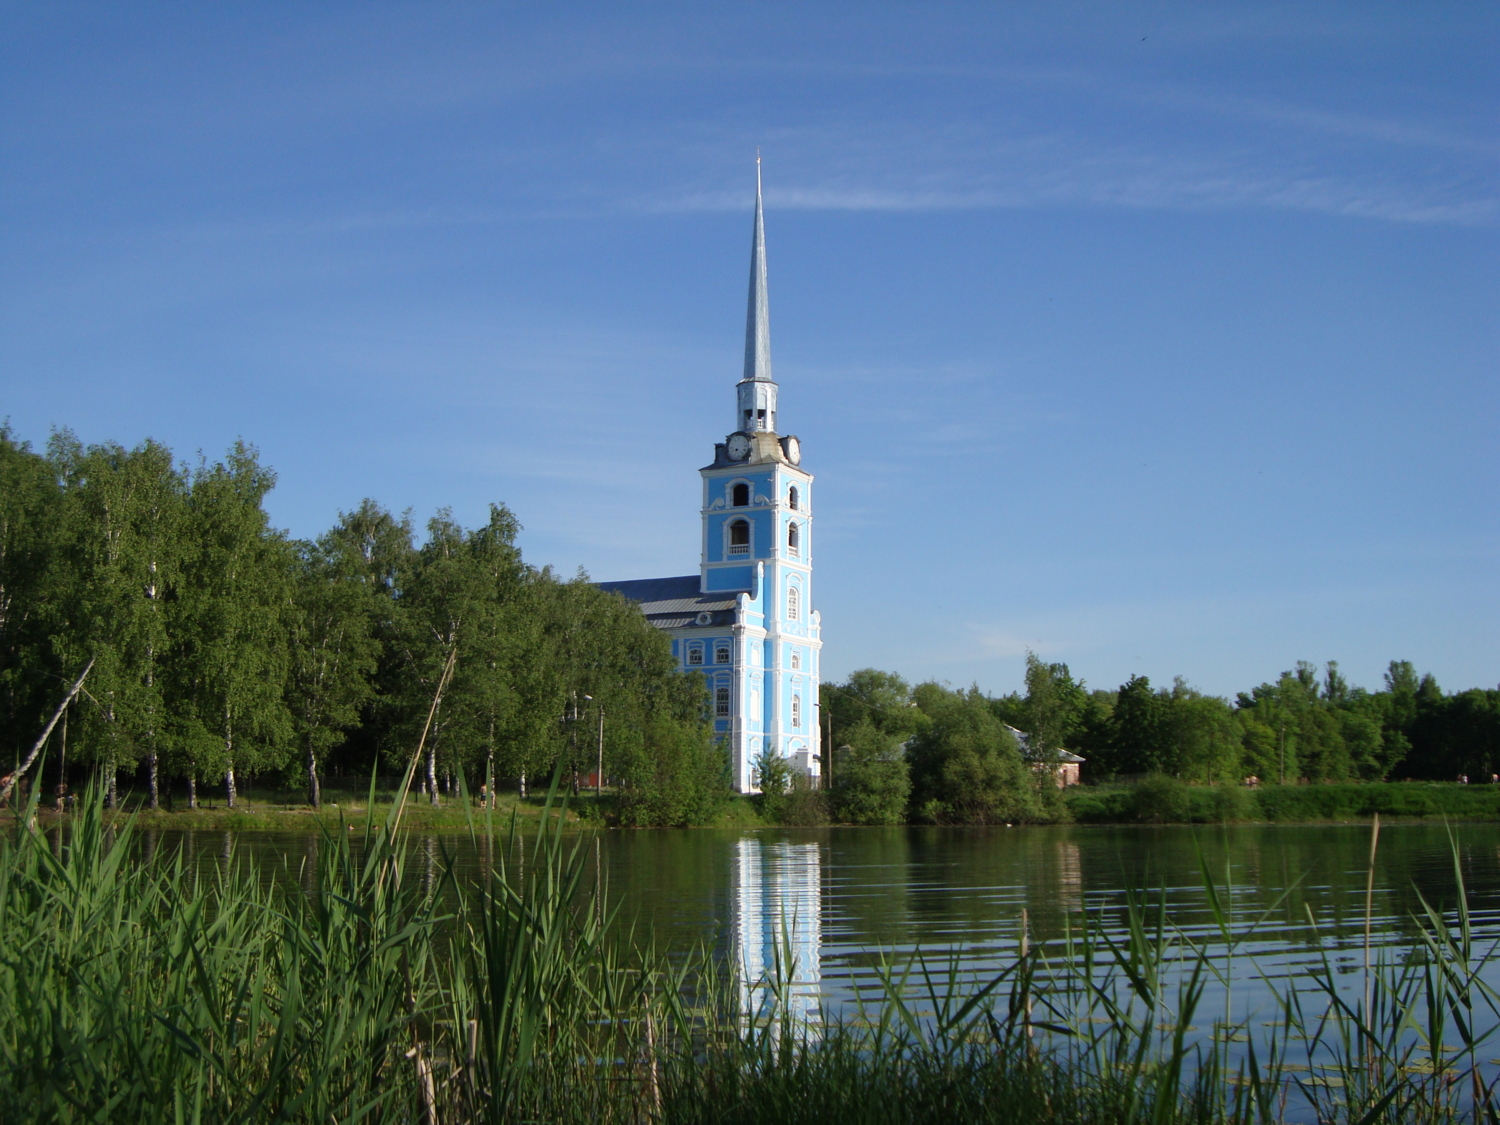 Церковь в Петропавловском парке